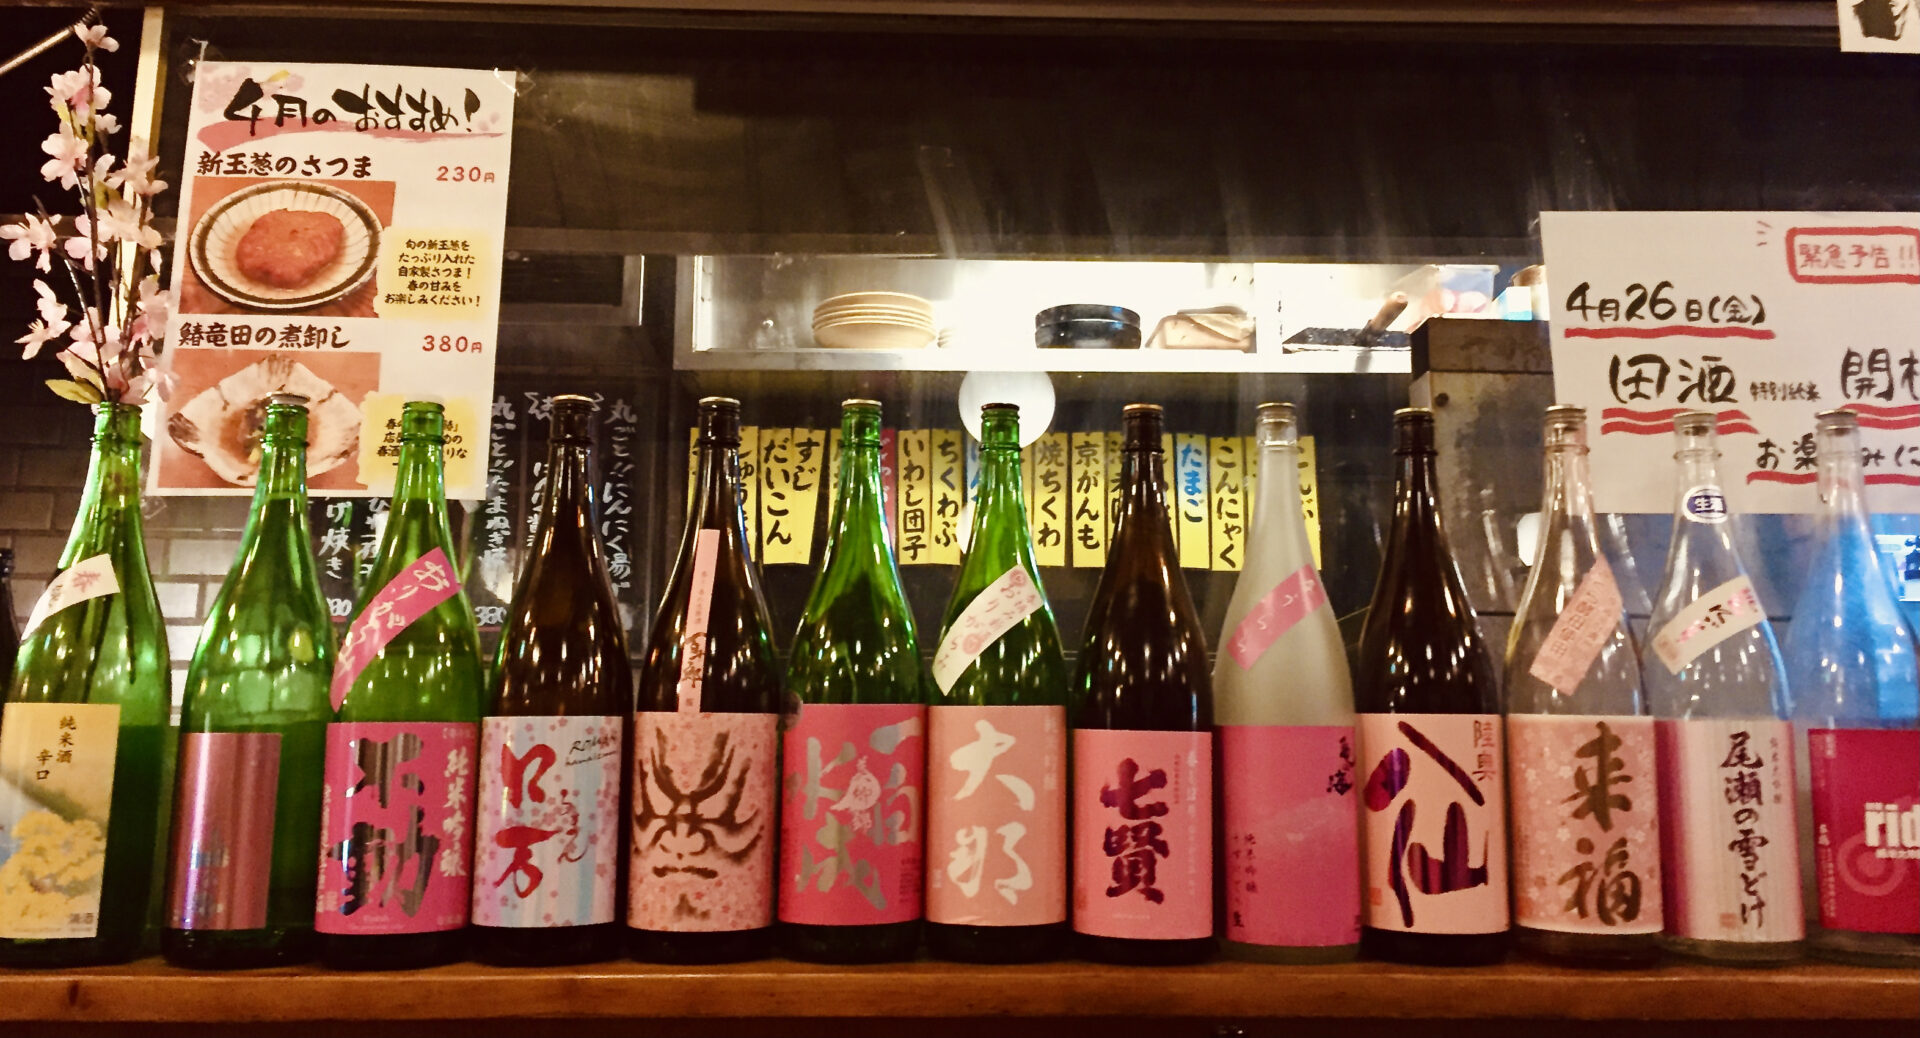 ピンク色のラベルの揃った日本酒の瓶の写真